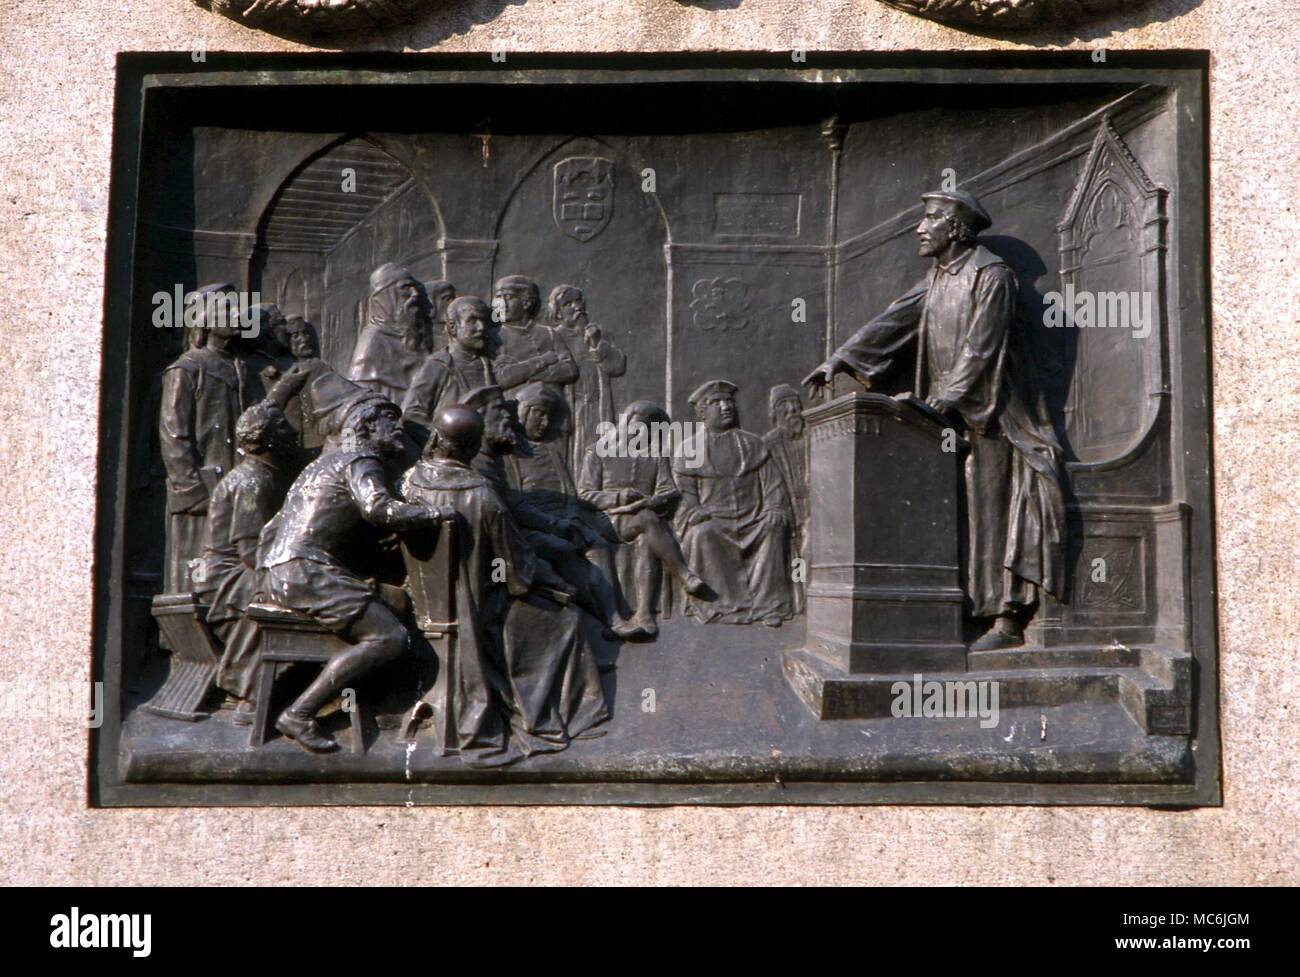 Okkultisten - BRUNO. Der esoteriker und Ketzer, Giordano Bruno in Polemik. Plakette auf der Bruno Statue in Piazza di Fiori, Rom Stockfoto